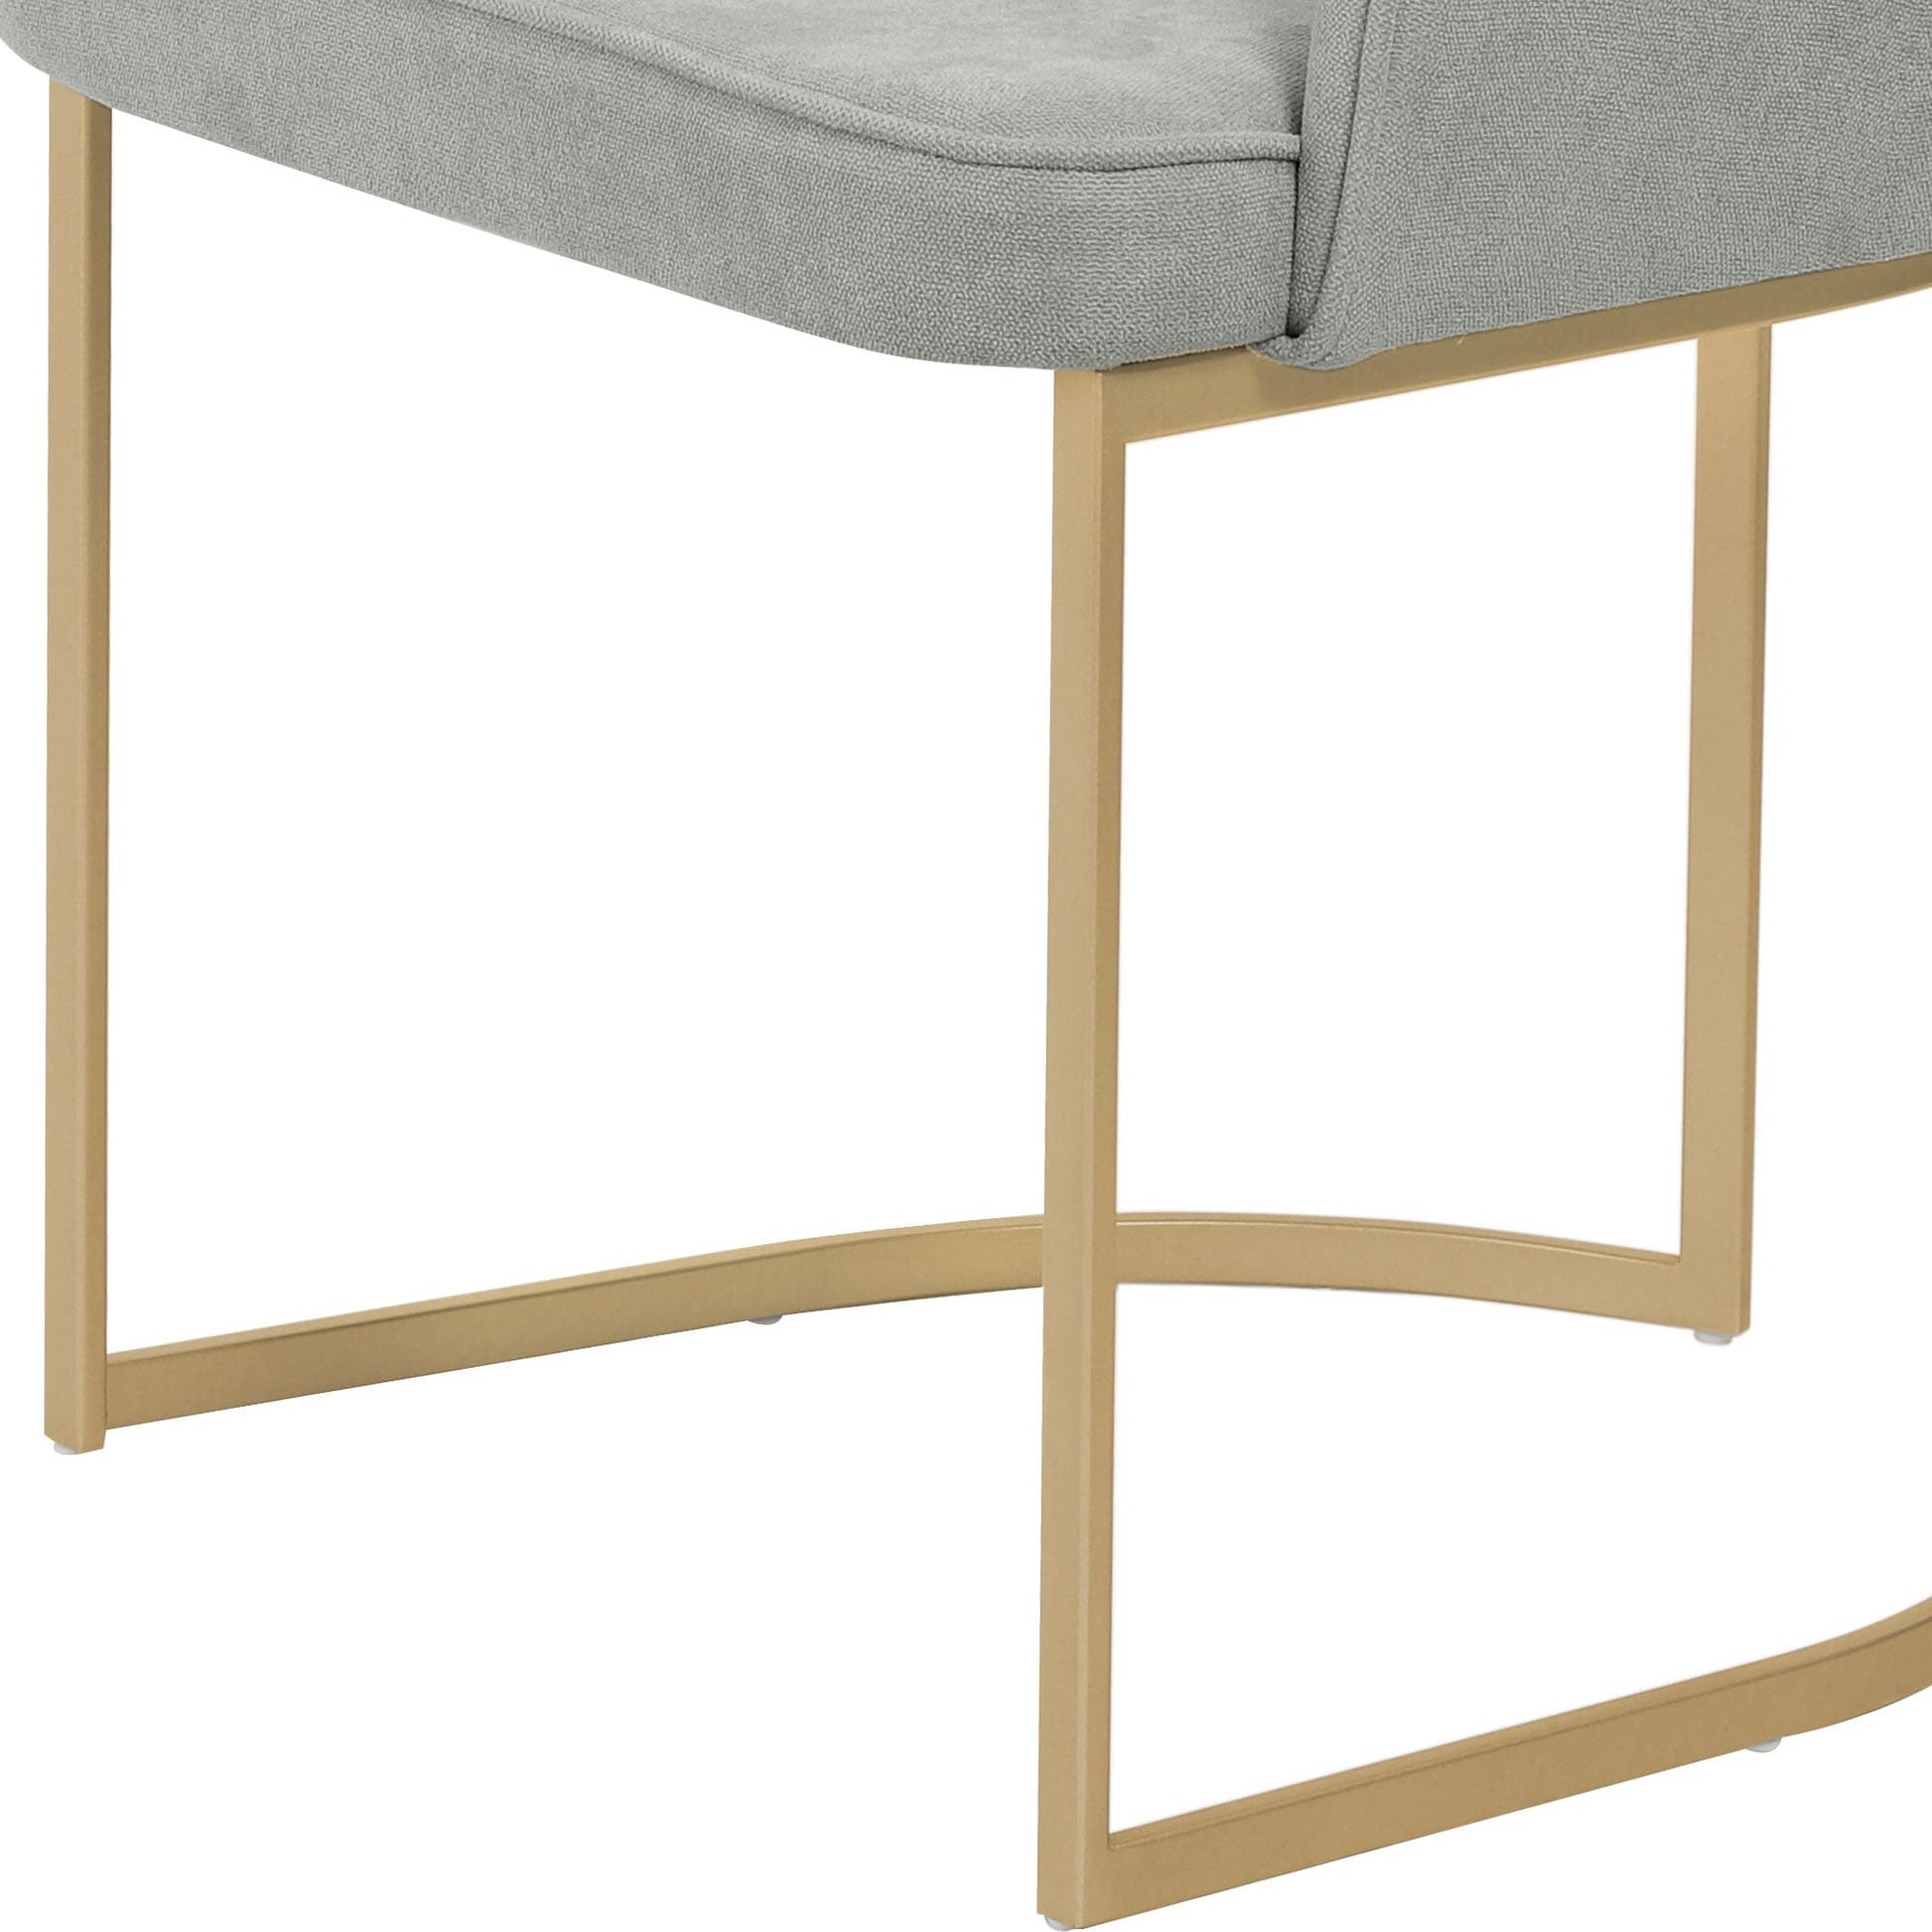 Homedock Cadeira Beverly - Dourado c/ Soft Sálvia Móveis Provincia